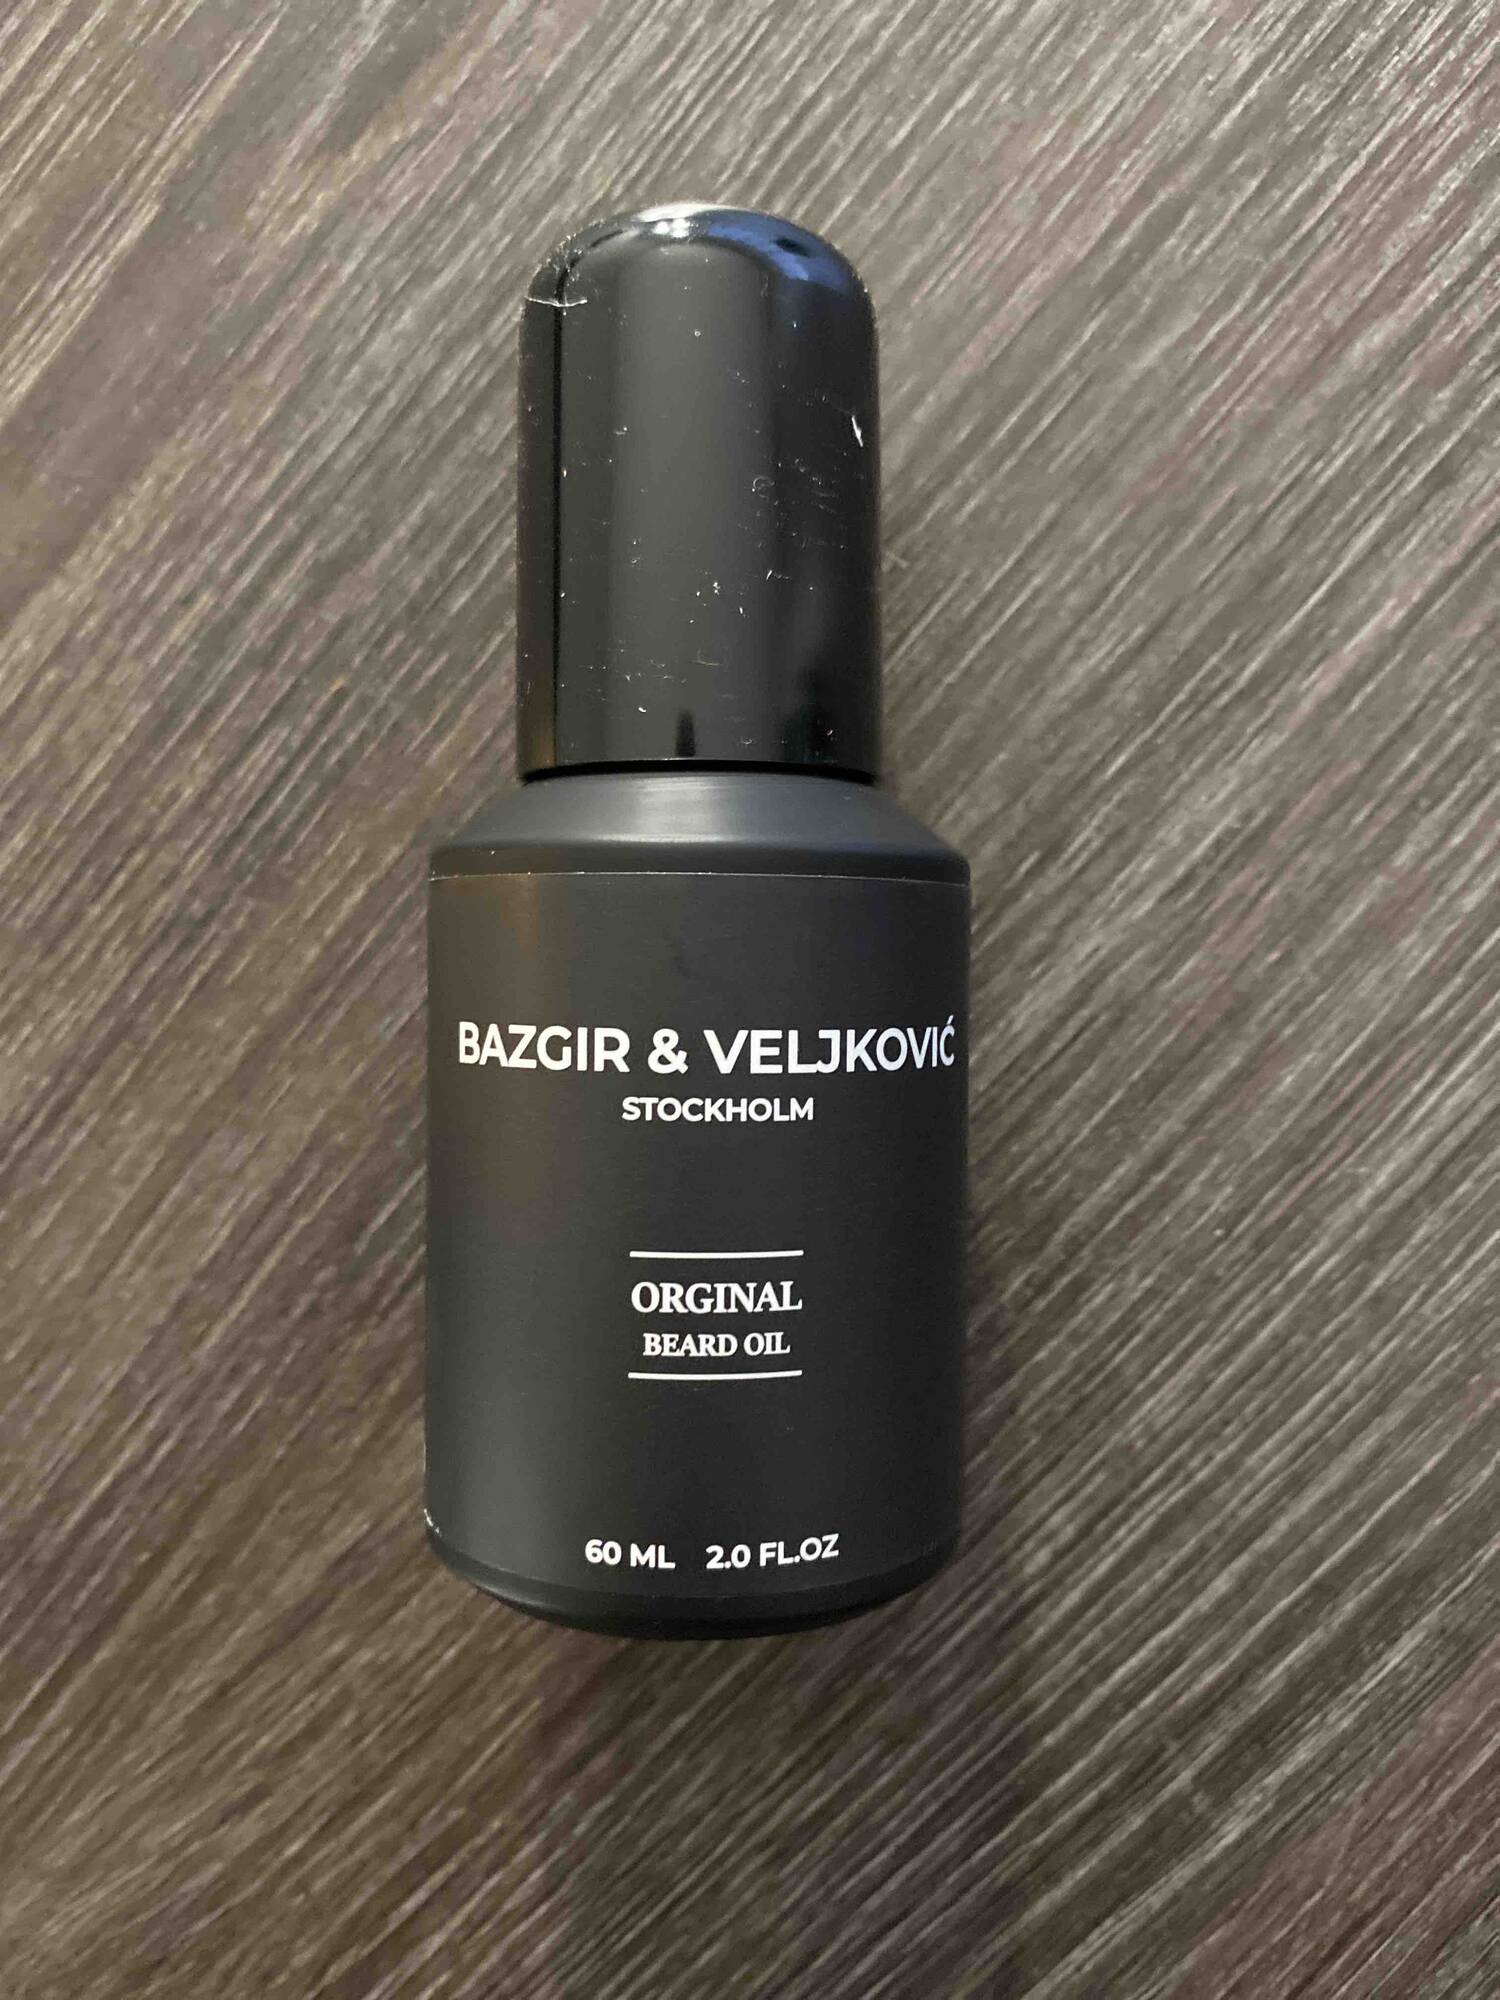 BAZGIR & VELJKOVIC - Original beard oil